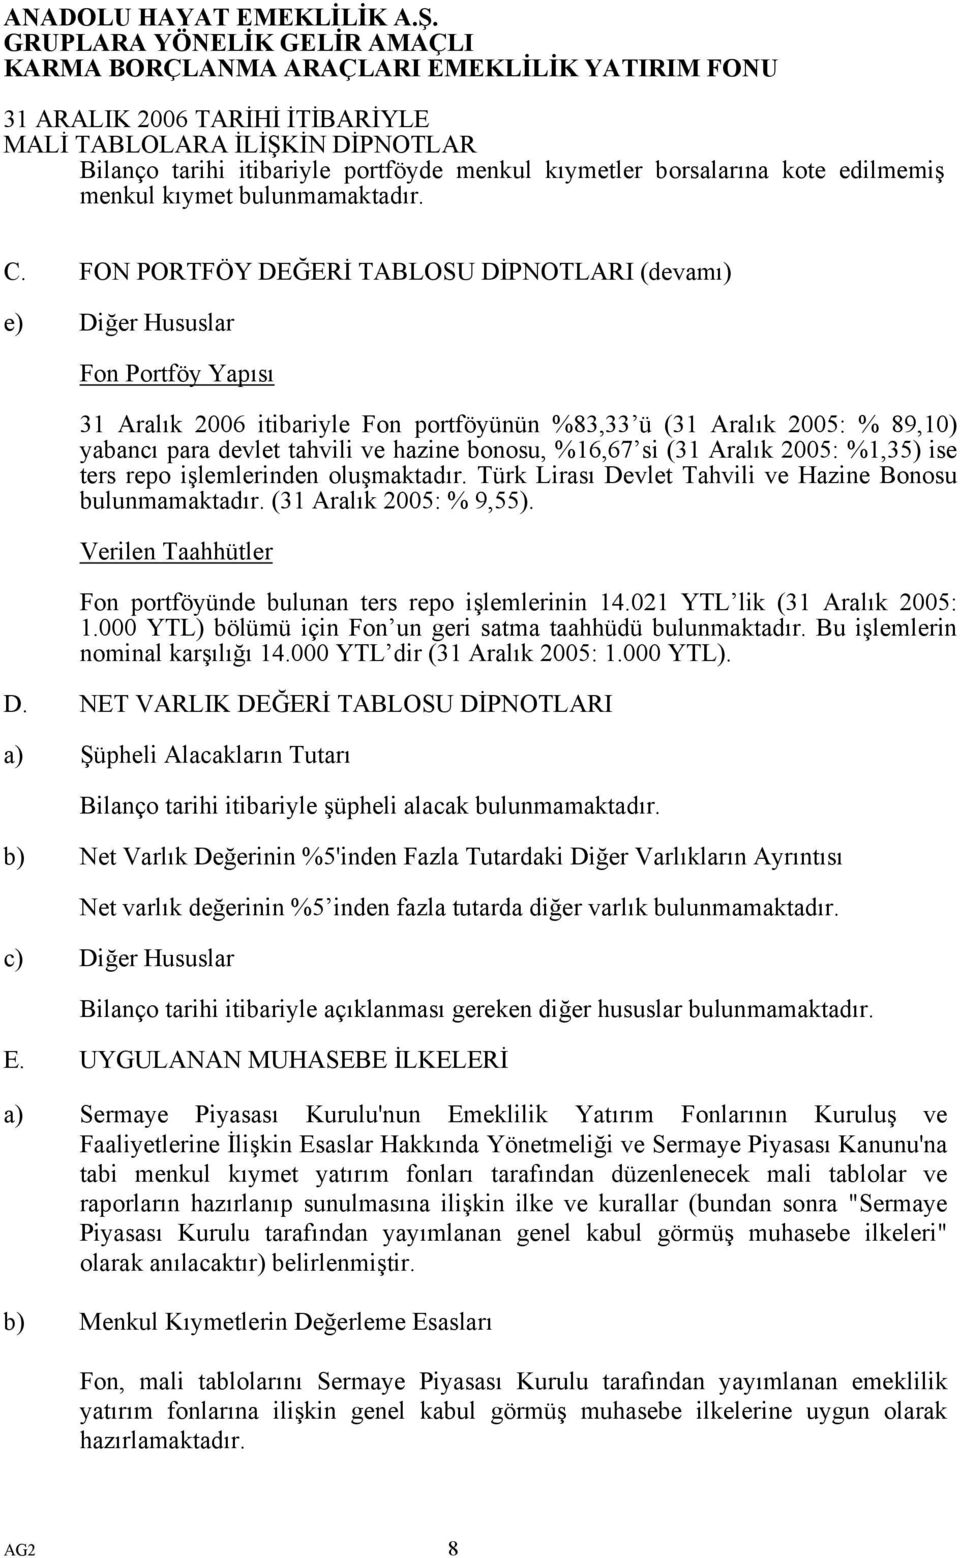 bonosu, %16,67 si (31 Aralık 2005: %1,35) ise ters repo işlemlerinden oluşmaktadır. Türk Lirası Devlet Tahvili ve Hazine Bonosu bulunmamaktadır. (31 Aralık 2005: % 9,55).